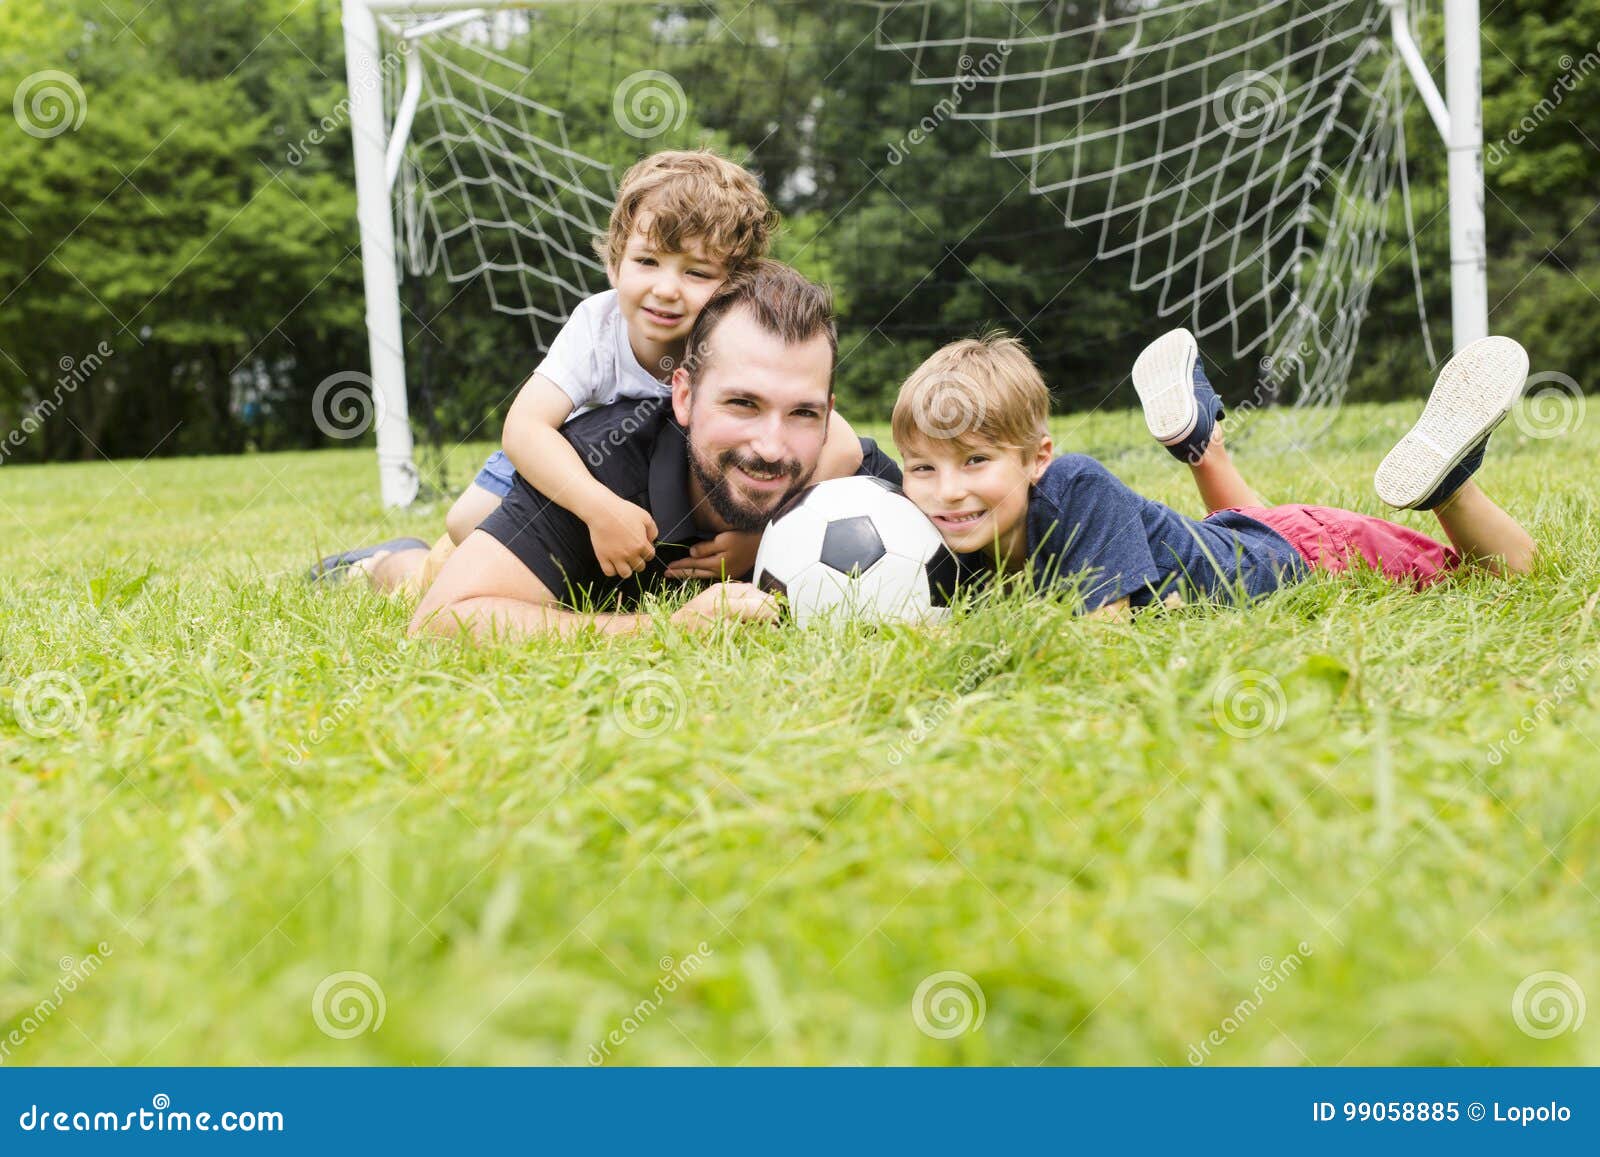 Папа играет в футбол. Семья на футбольном поле. Футбол с папой. Отец и сын футбол. Фотосессия на футбольном поле с сыном.